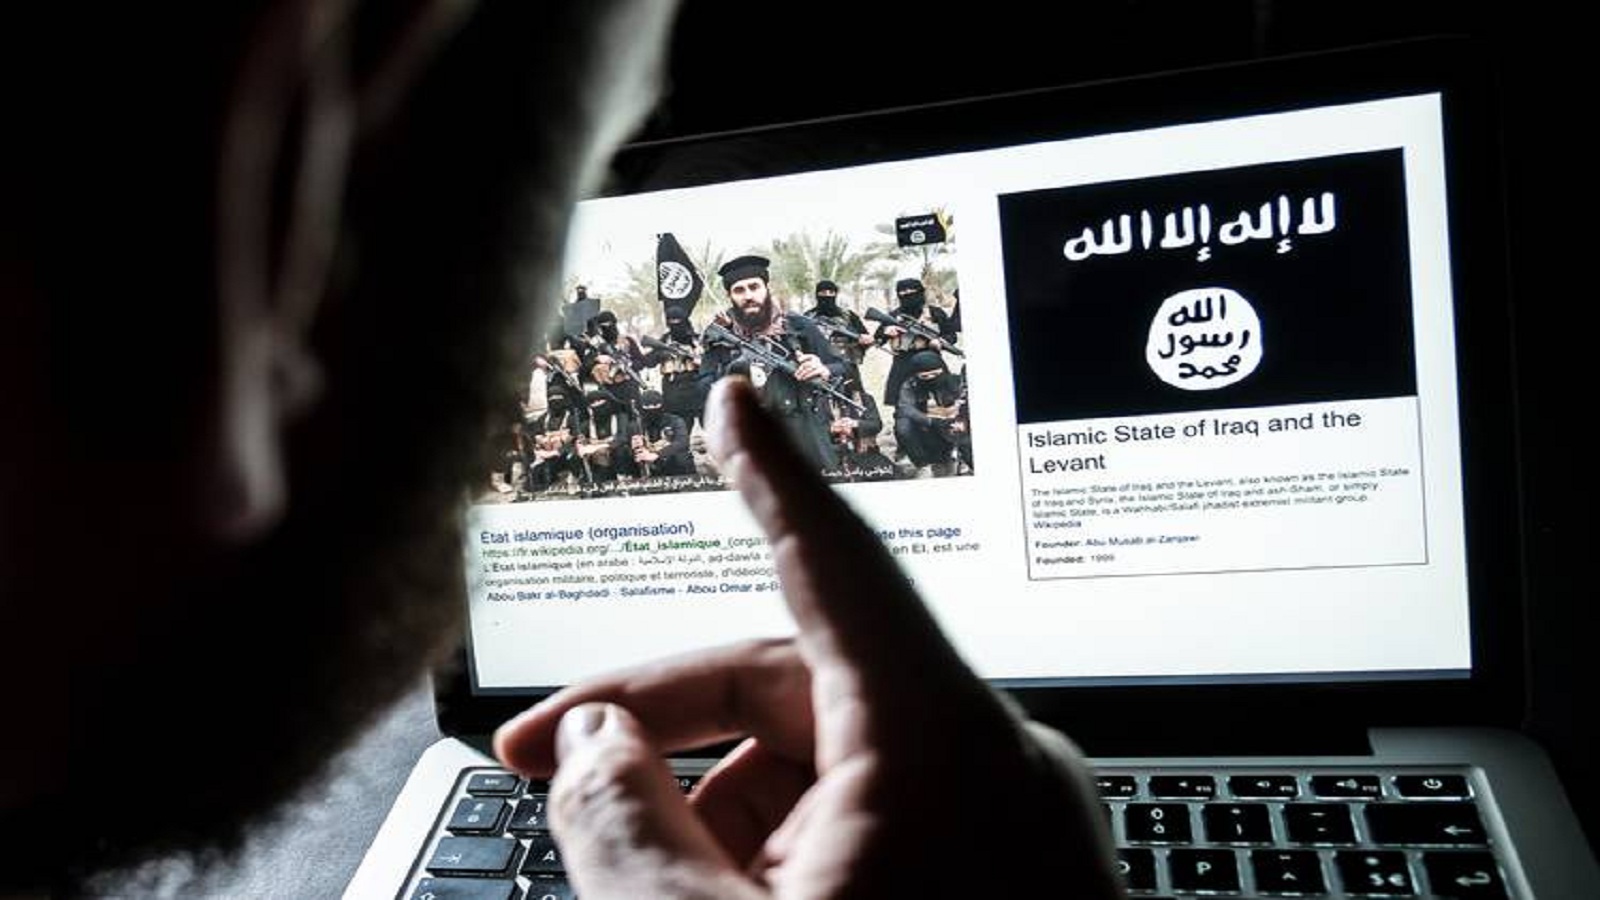 "البصمات الرقمية" لكشف المحتوى الإرهابي